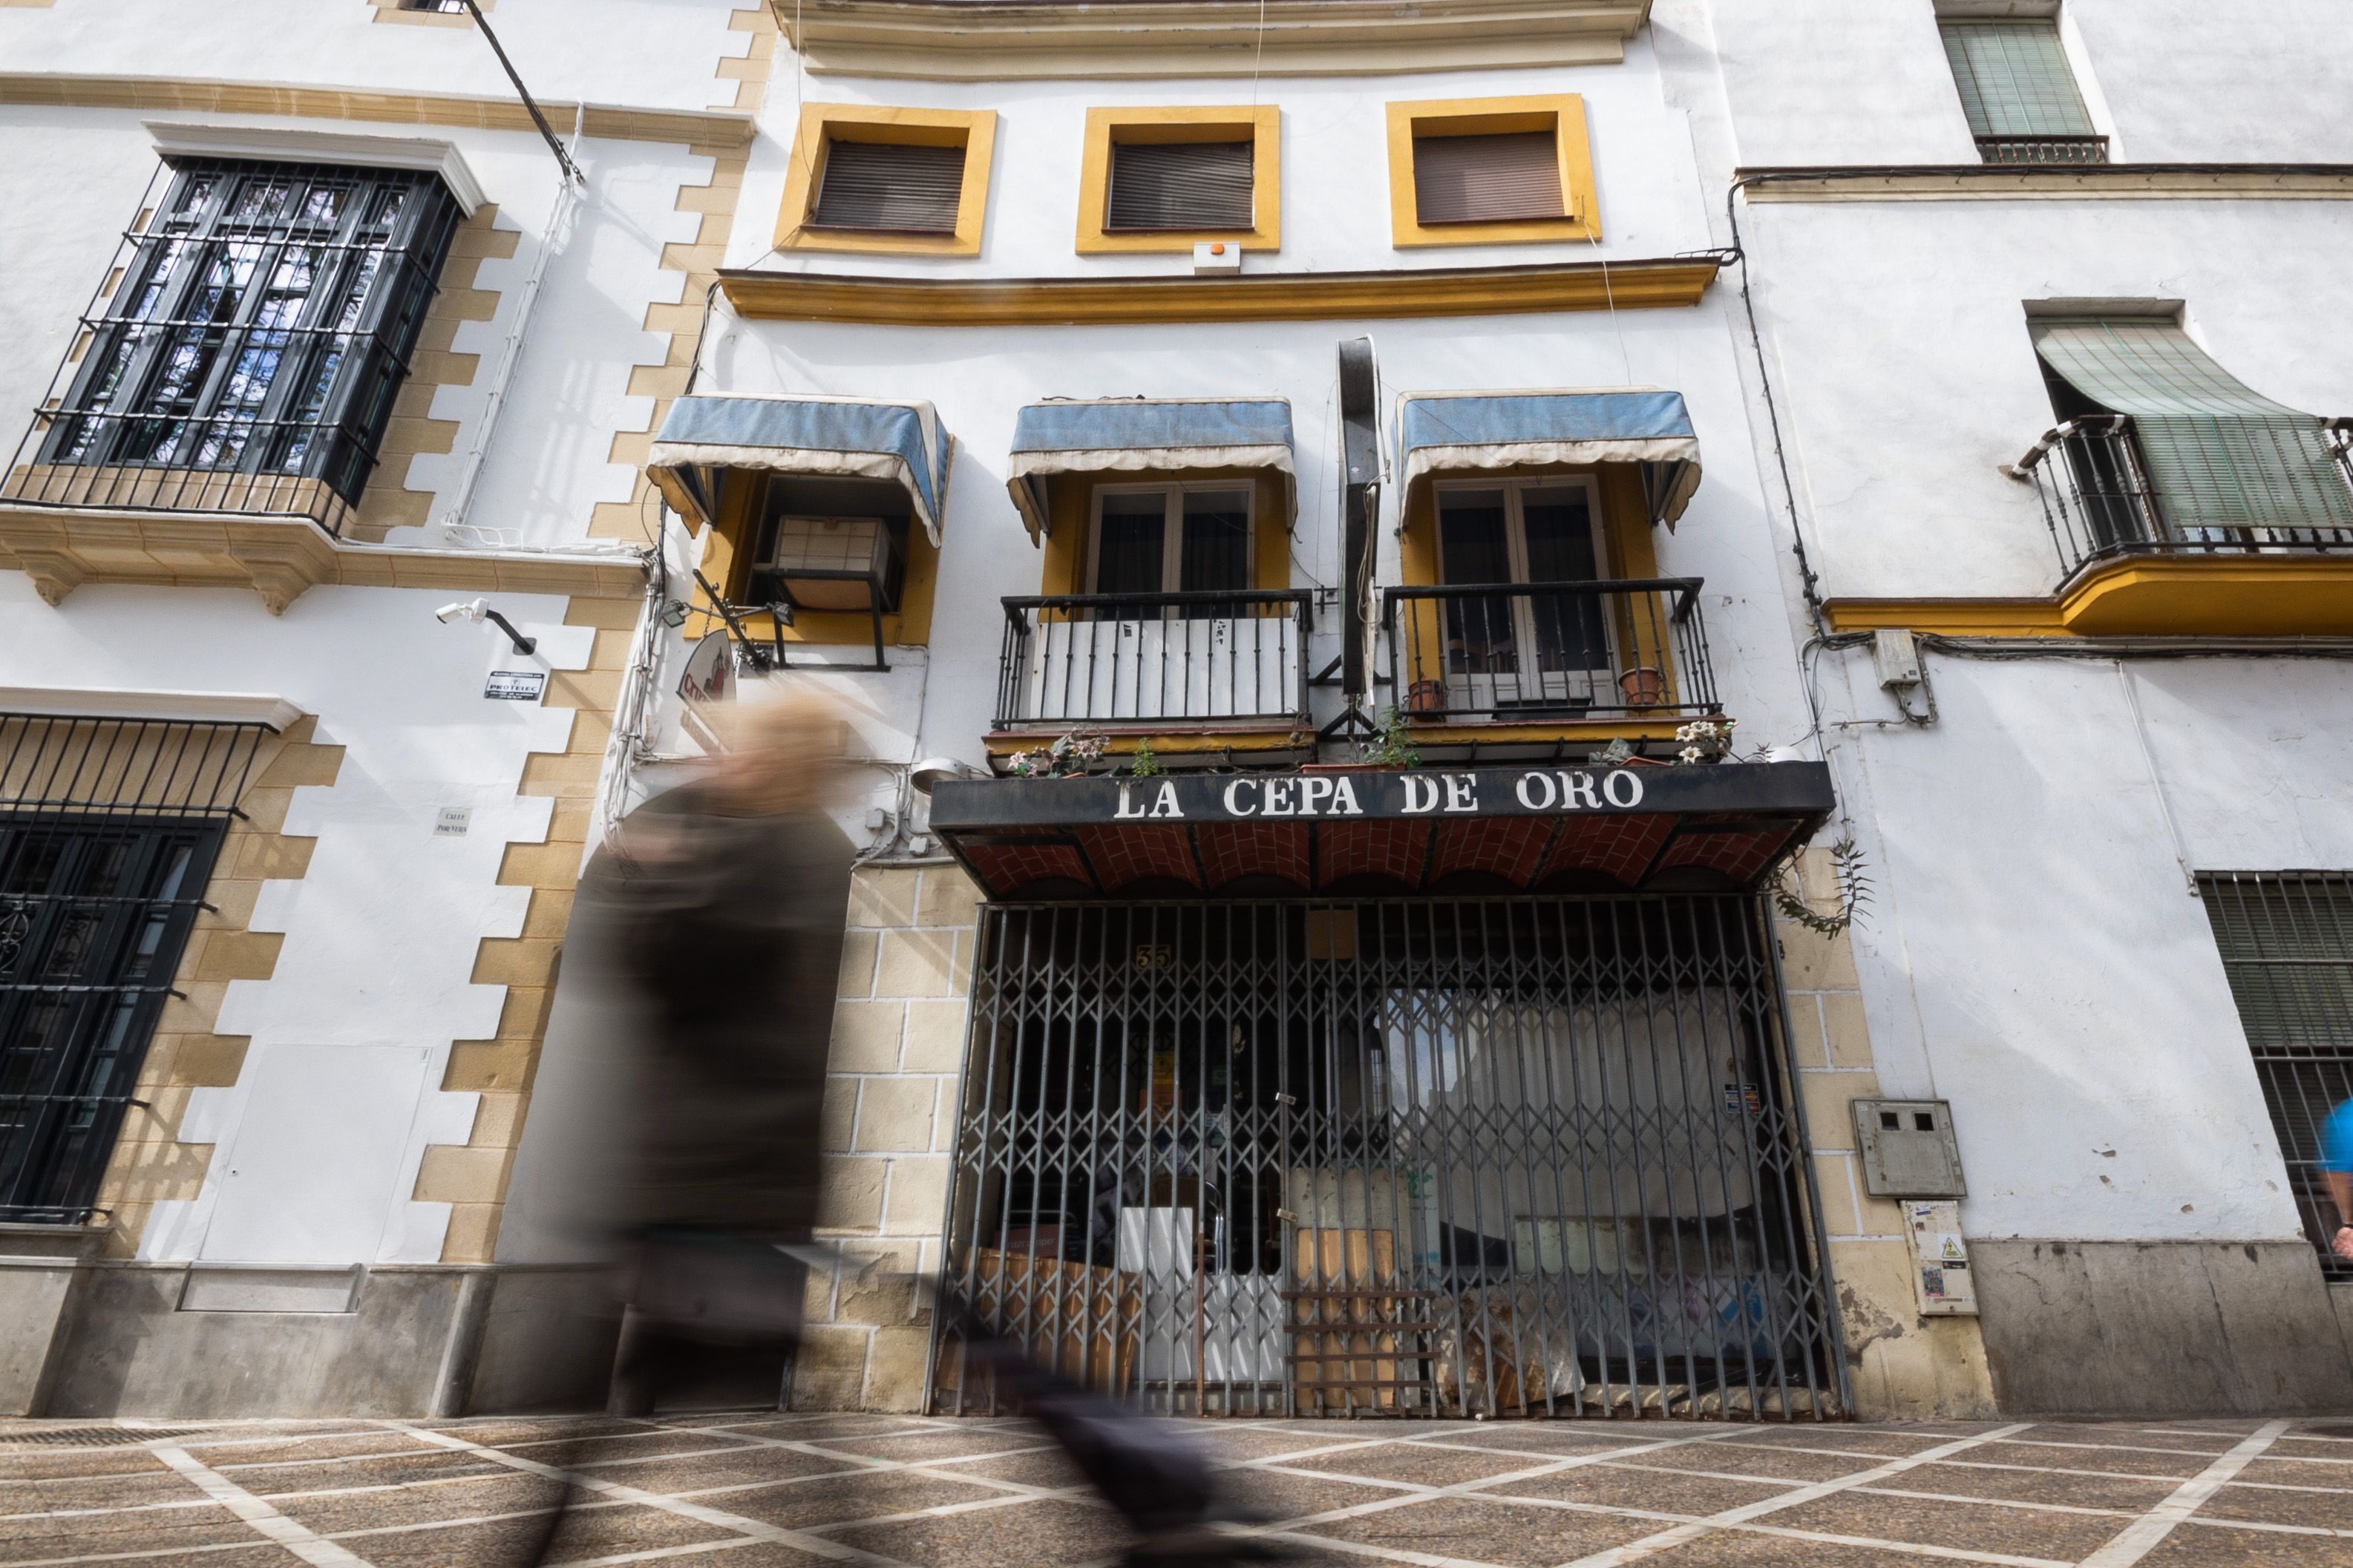 Fachada del inmueble a la venta, en la calle Porvera de Jerez, aún con los rótulos del mítico restaurante La Cepa de Oro.